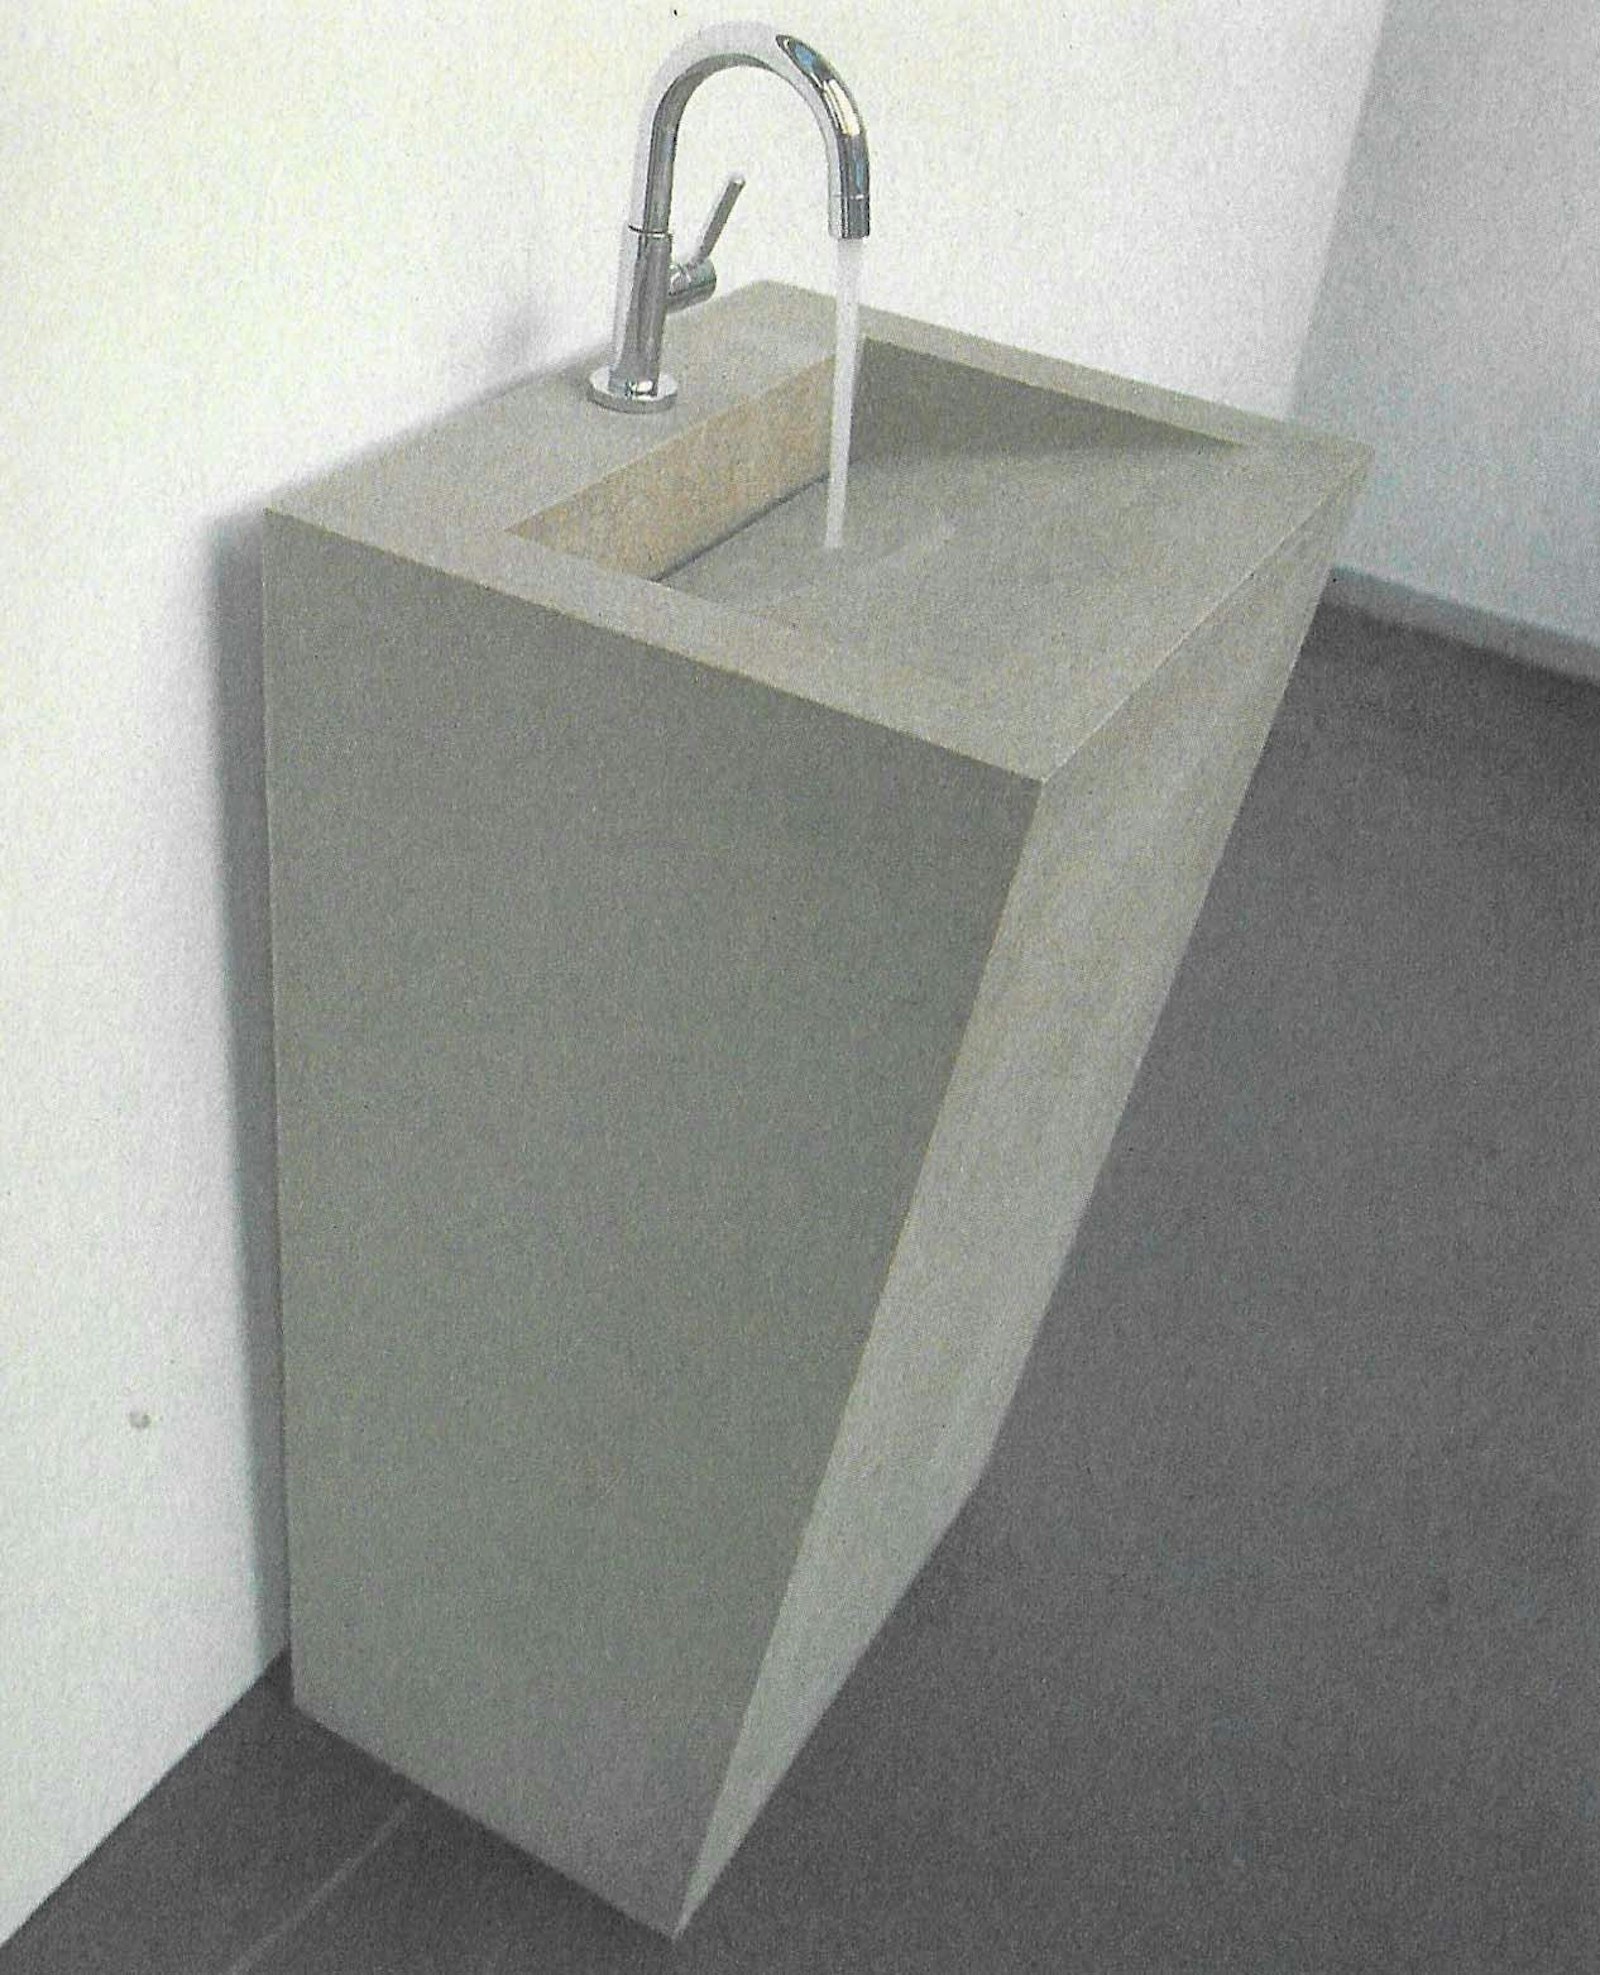 'Wash', ontwerp van Suzon Ingber (1998)